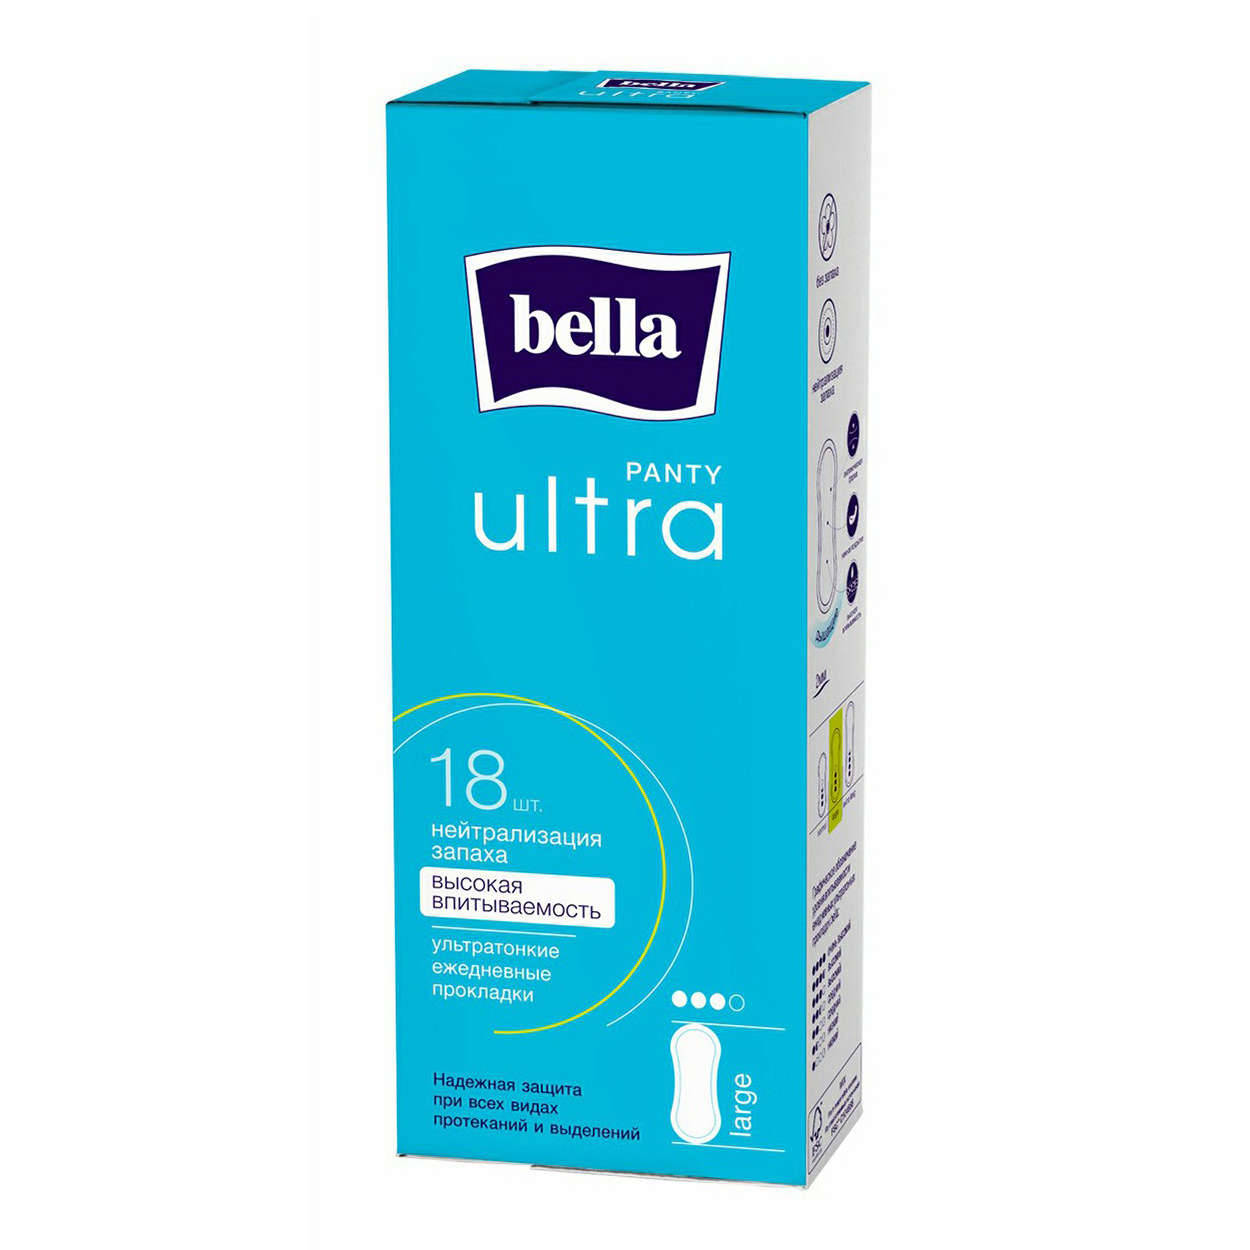 Прокладки без крылышек ежедневные Bella Panty Ultra Large 18 шт прокладки bella panty ideale ultra night 7шт